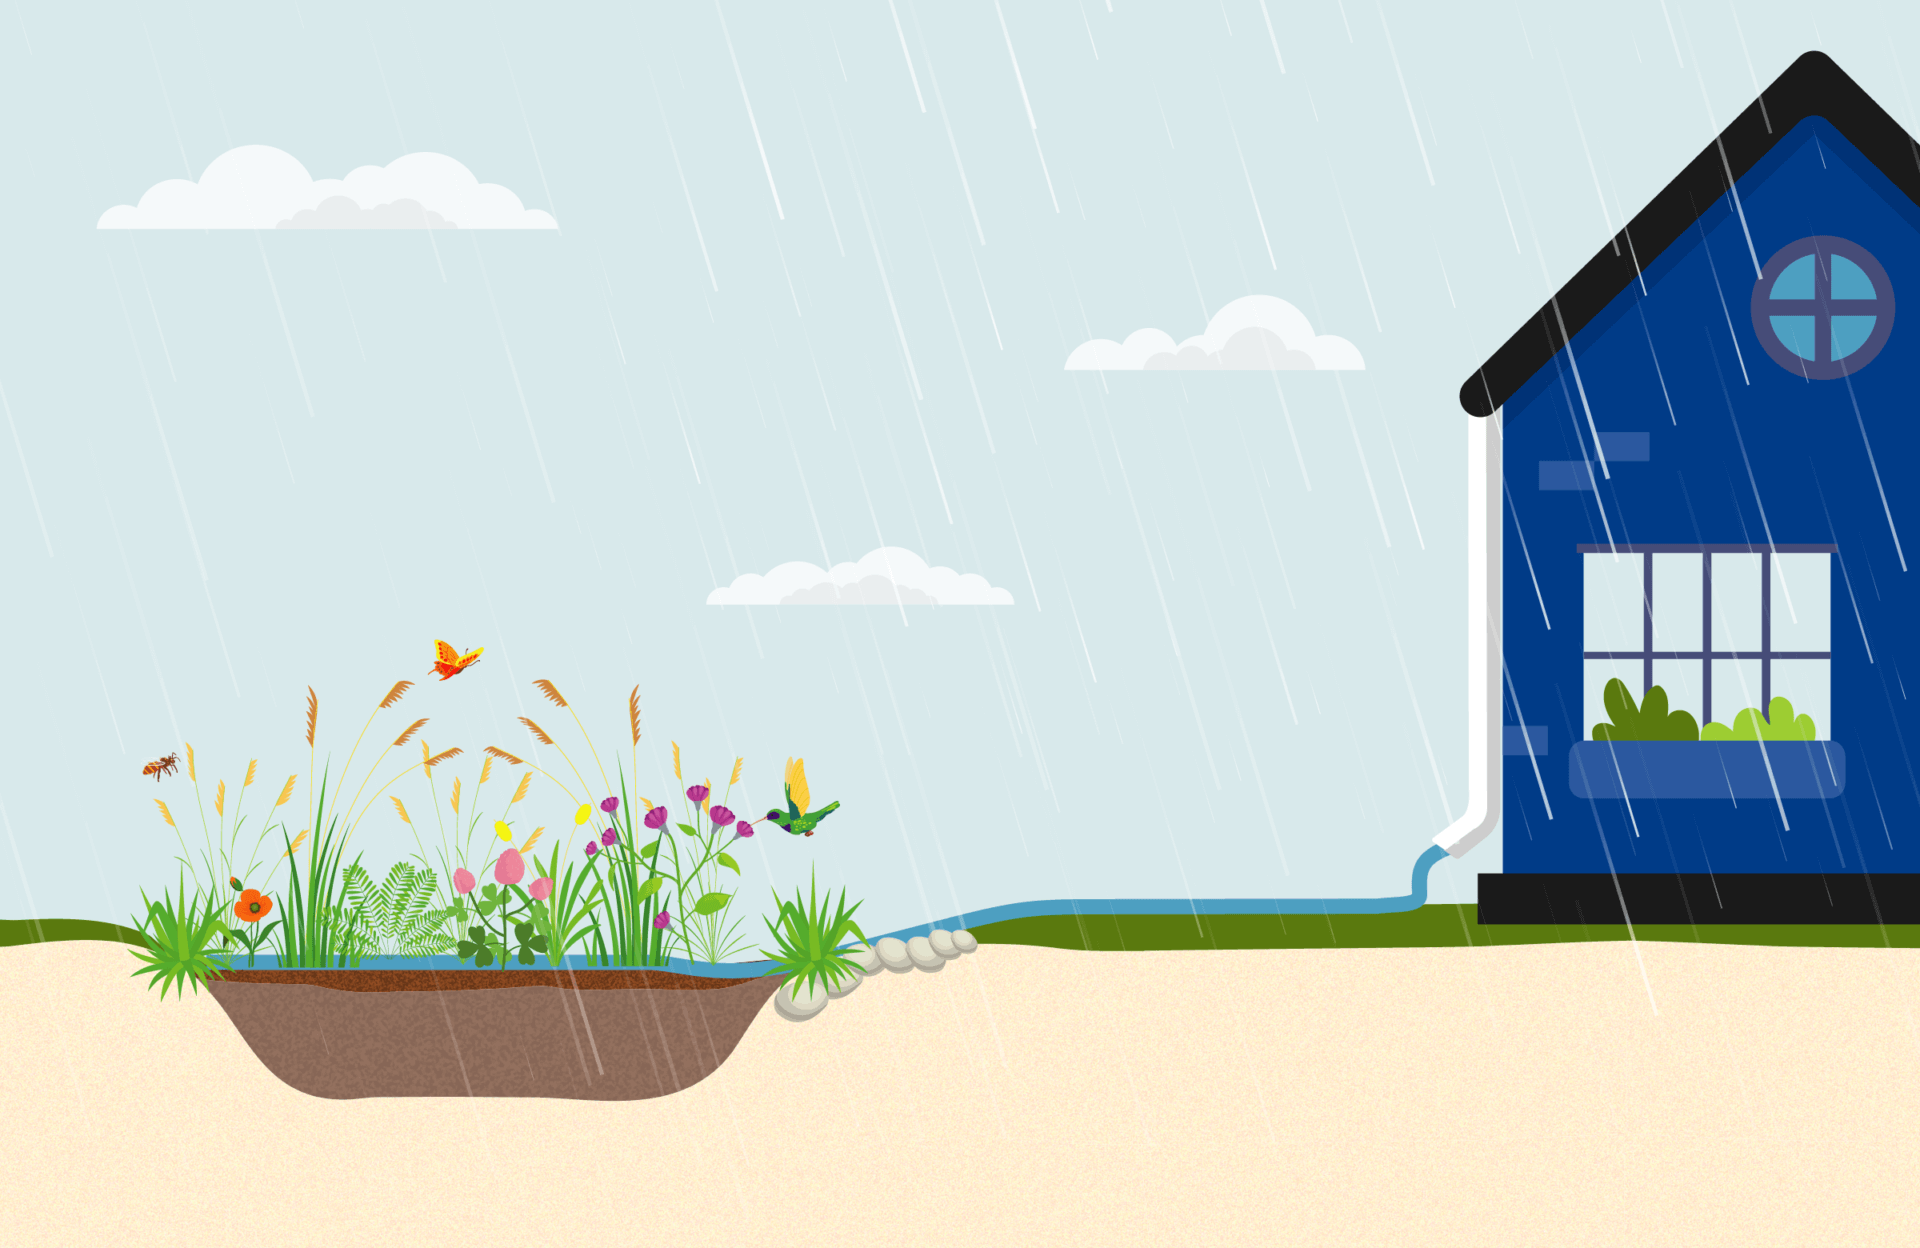 Rain garden illustration